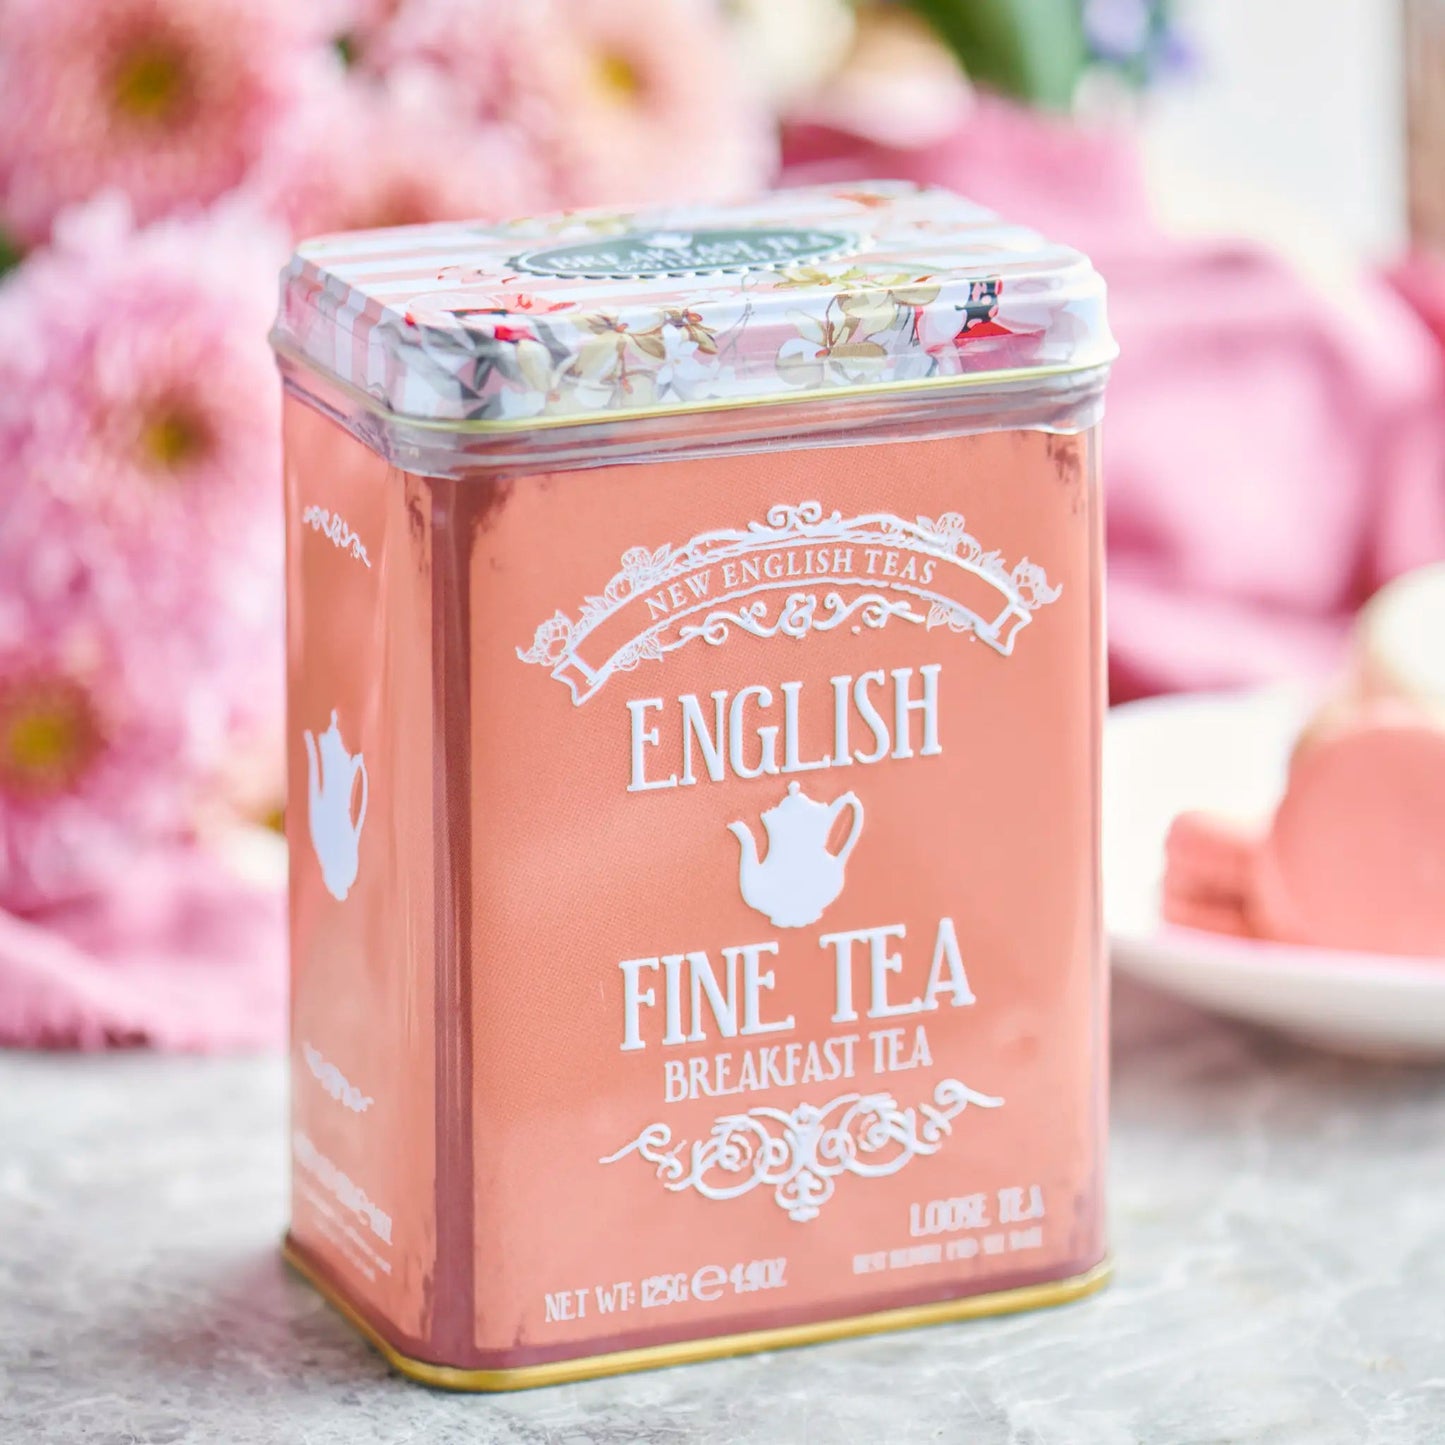 Floral Tea Tin With Loose-Leaf Breakfast Tea Tea Tins New English Teas 